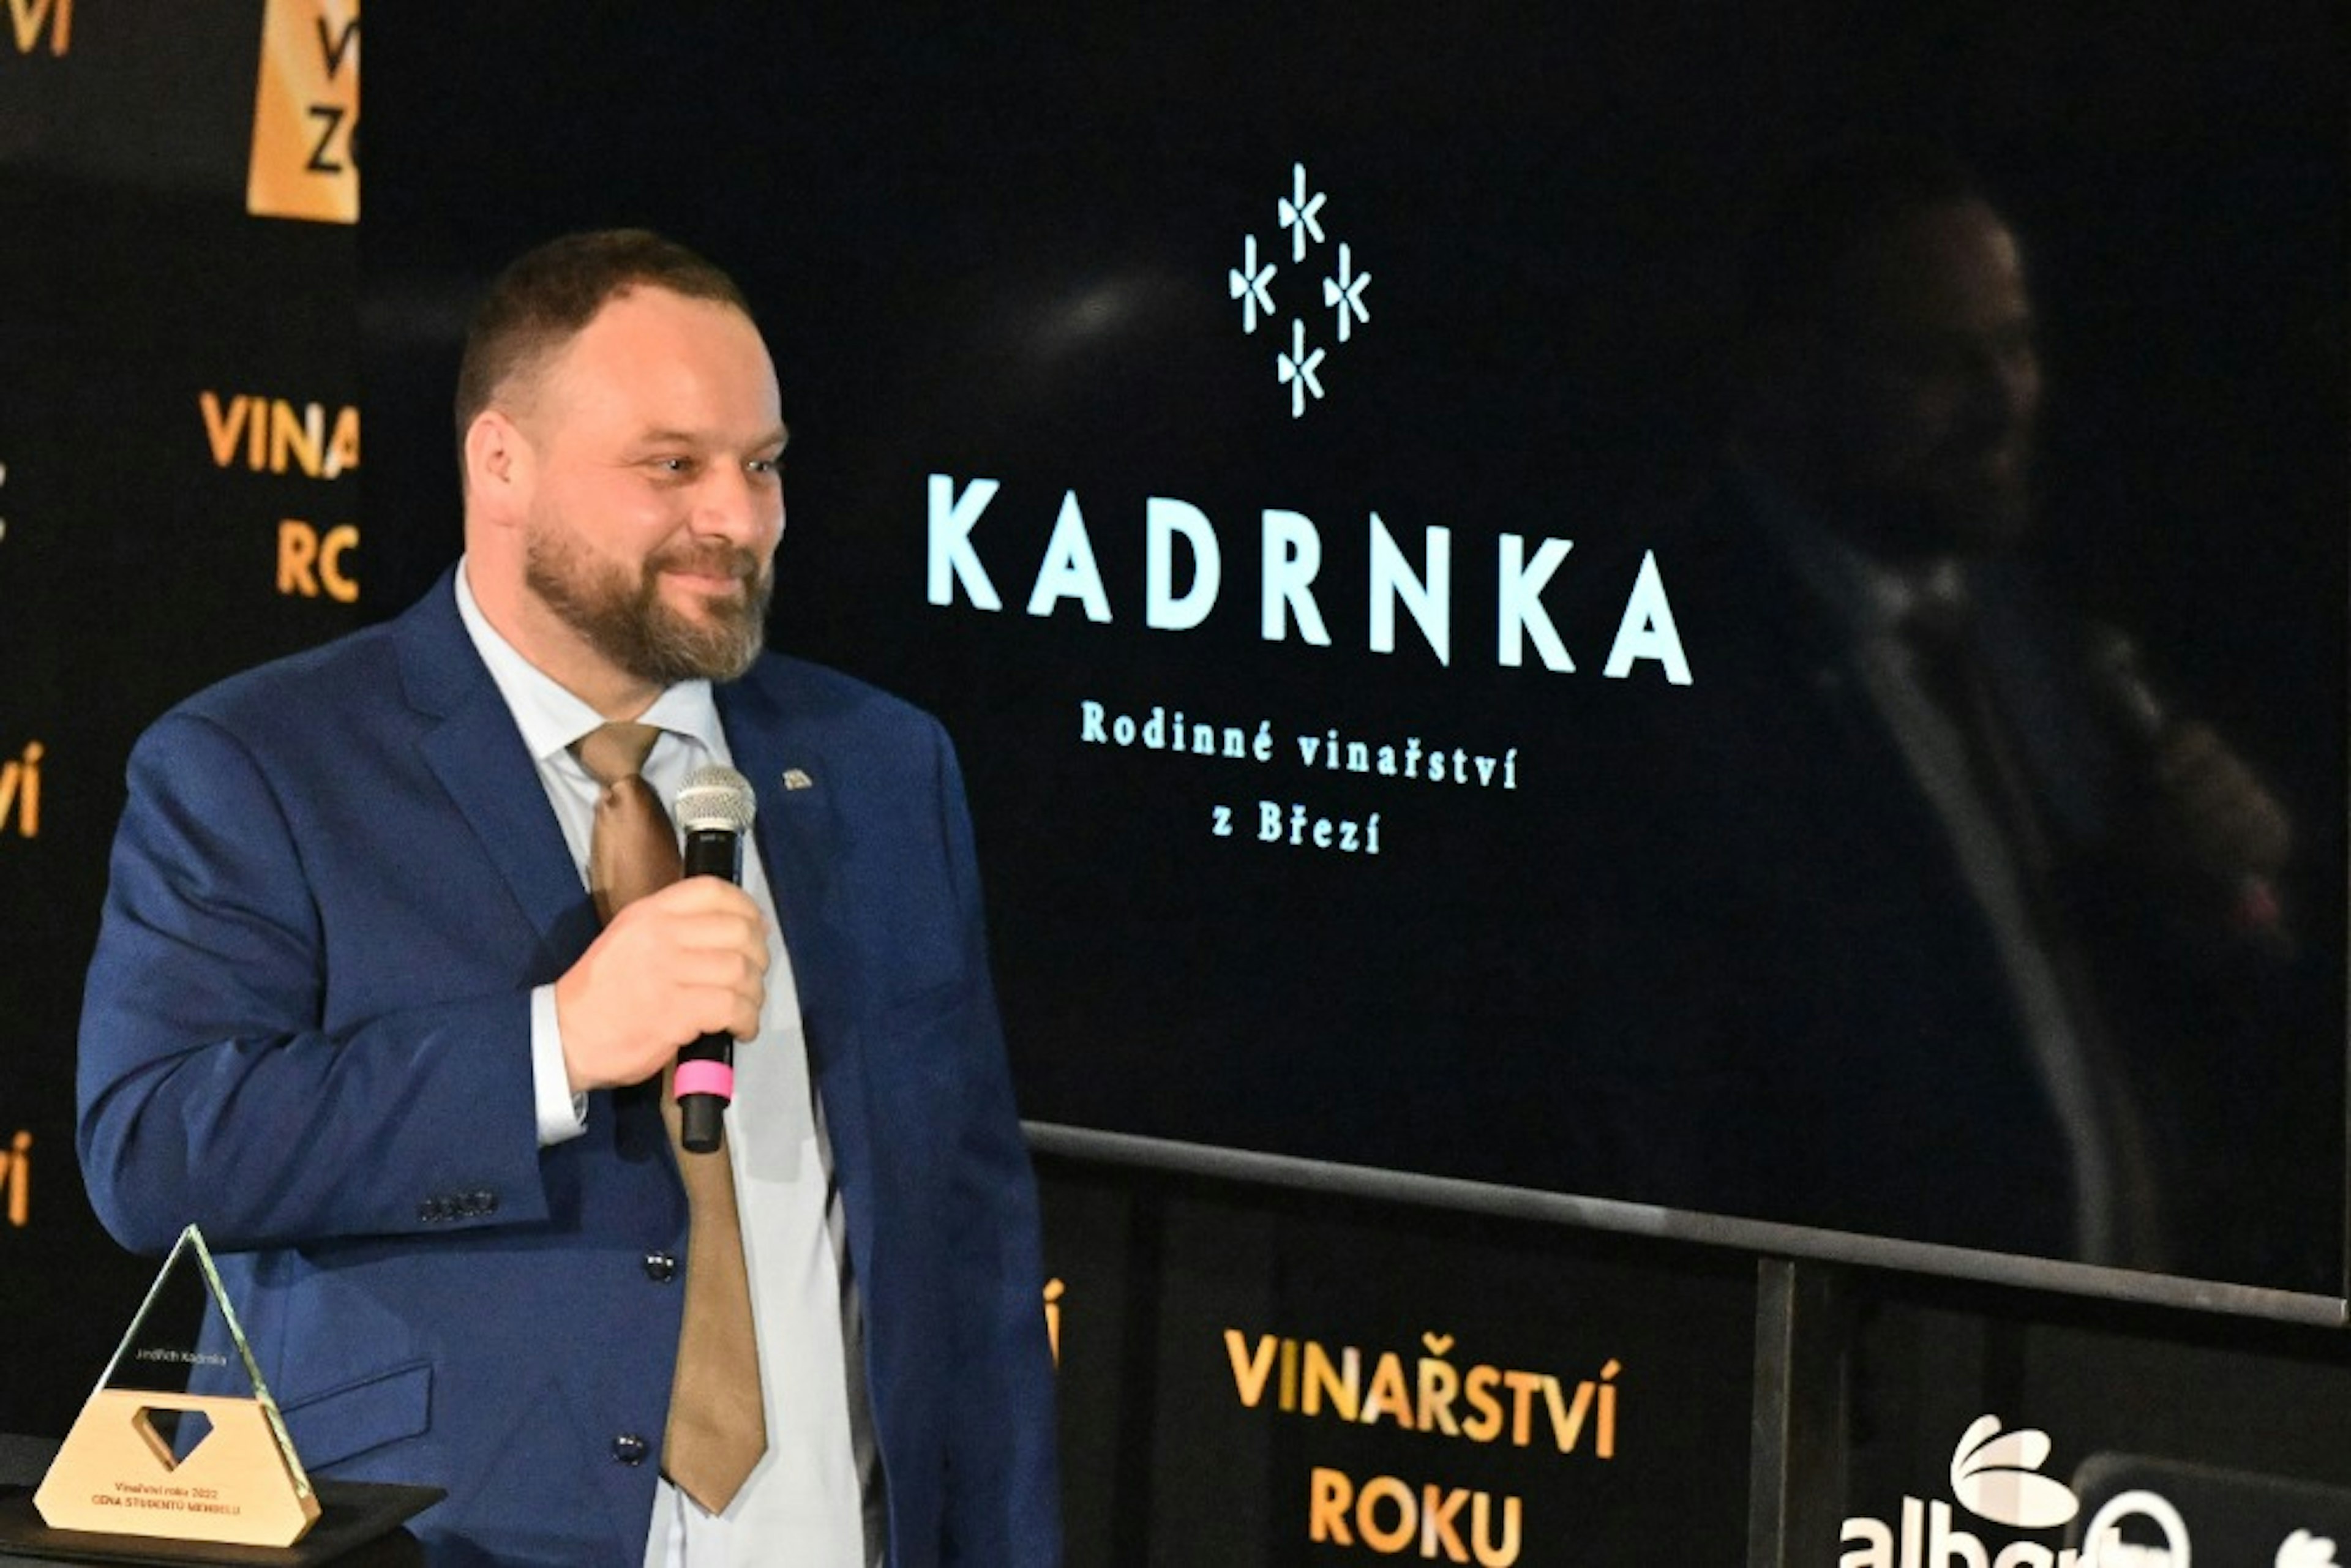 Jindřich Kadrnka